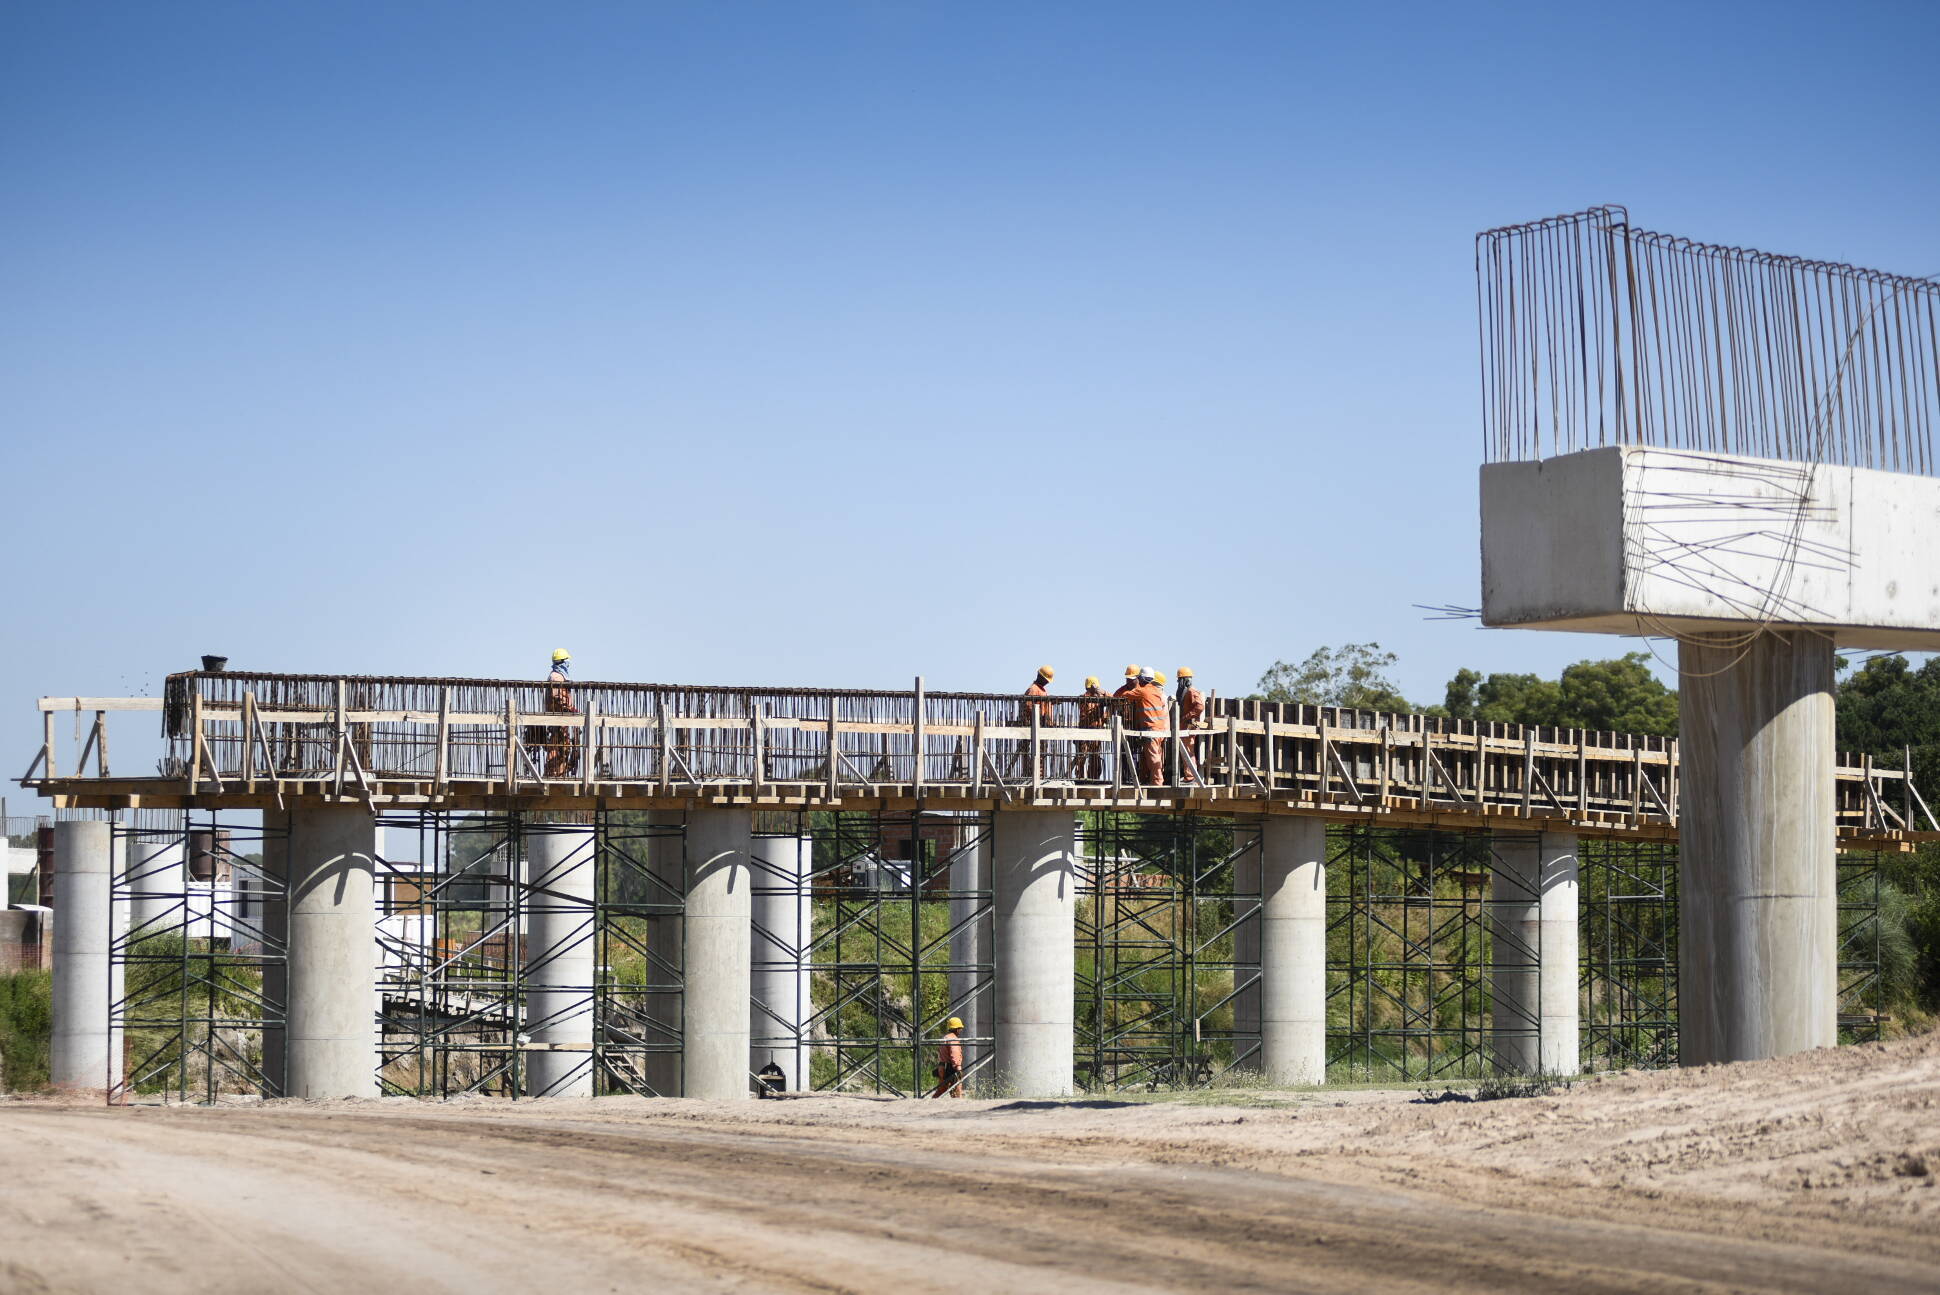 Avanza la construcción de la Autopista Presidente Perón en el conurbano bonaerense